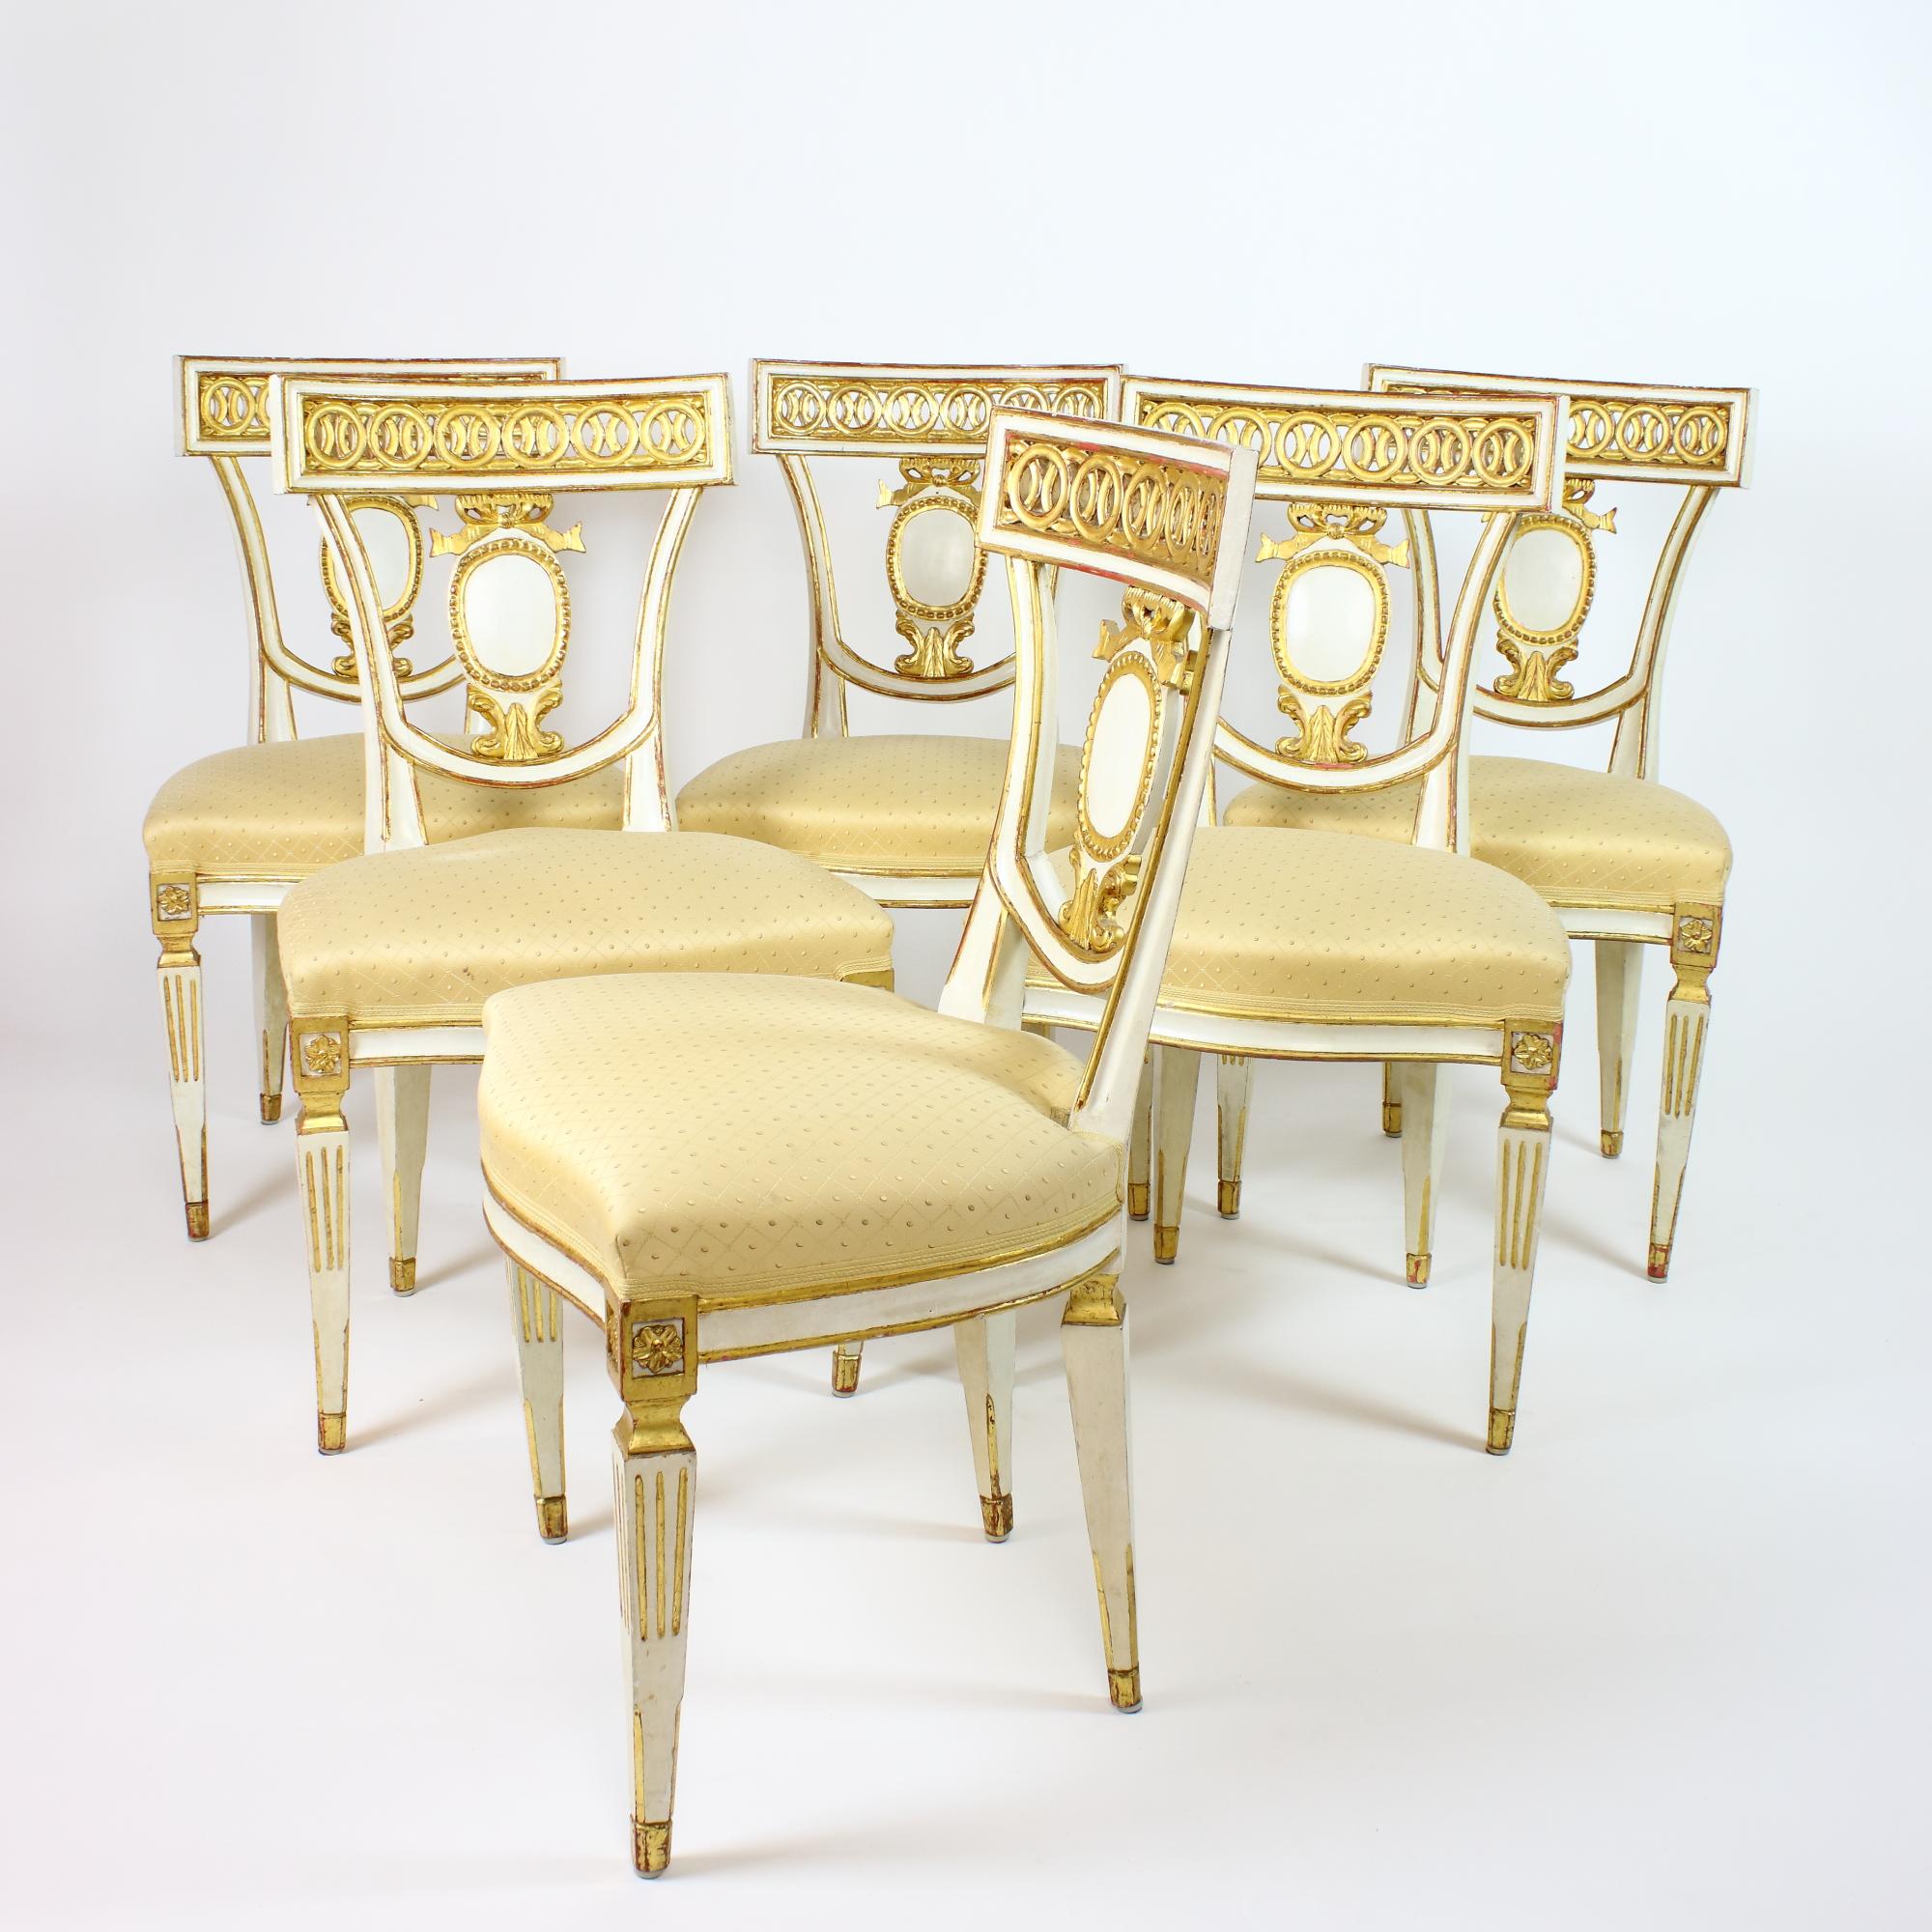 Très élégant ensemble de six chaises d'appoint ou de salle à manger néoclassiques italiennes de forme Klismos Empire de la fin du XIXe siècle : 
reposant sur quatre pieds effilés et partiellement cannelés, surmontés de cartouches à patères ; siège